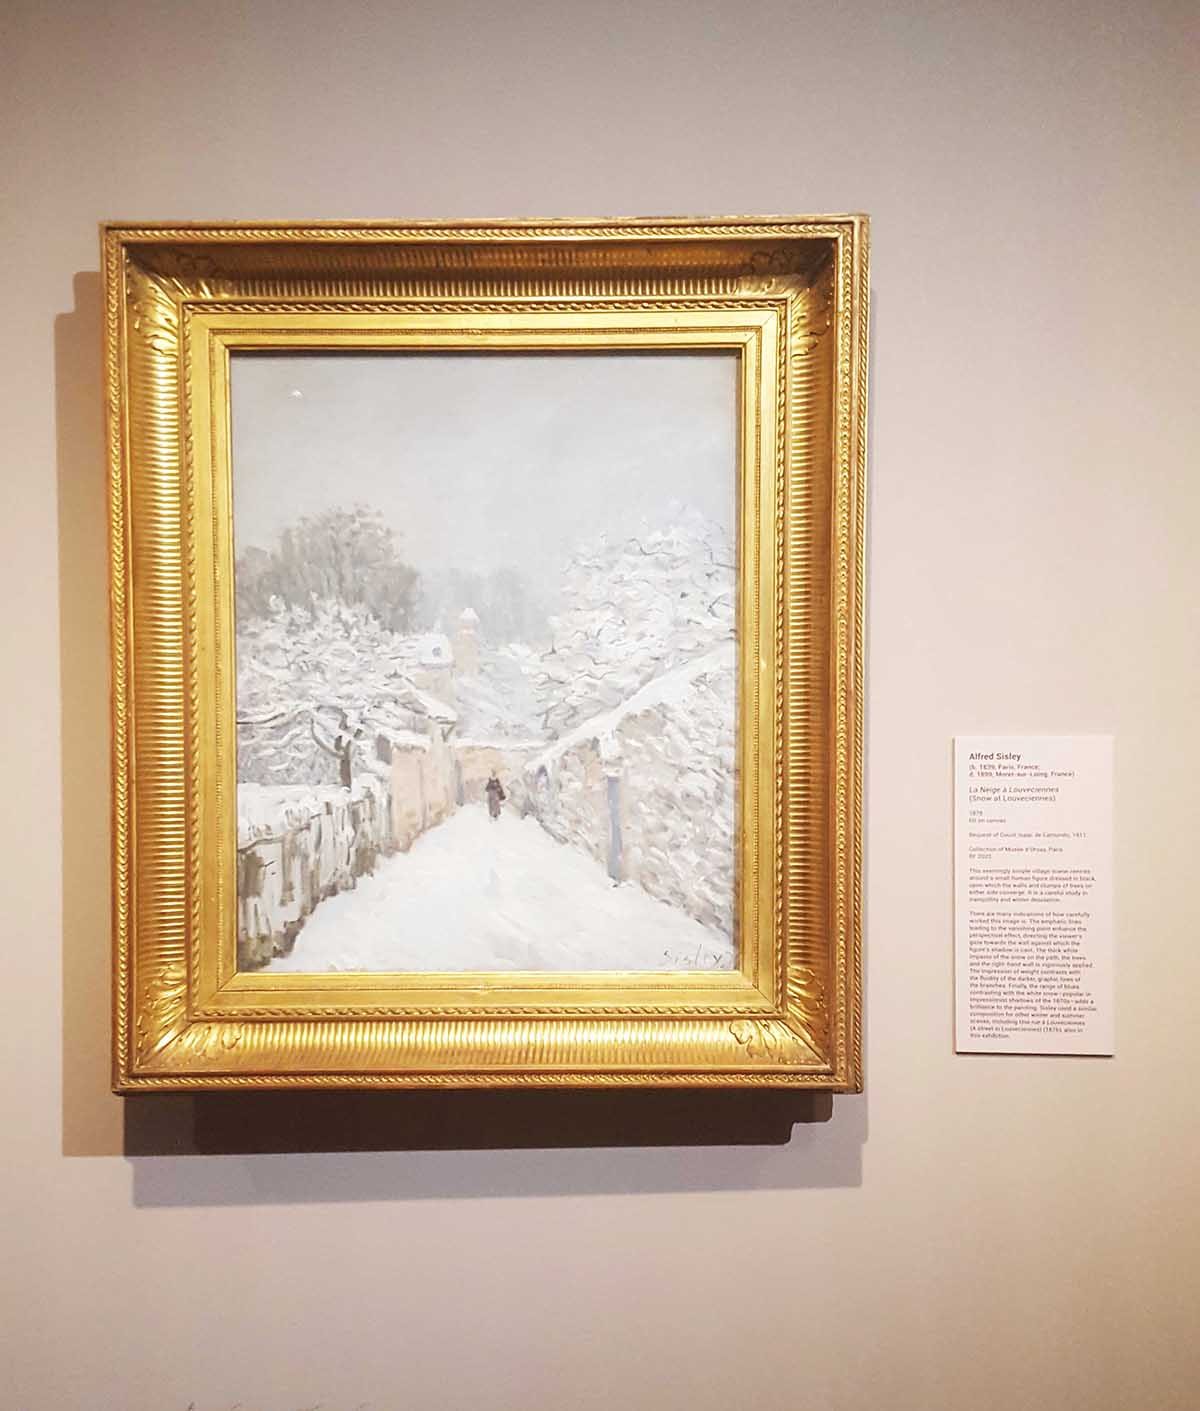 SNOW.  Alfred Sisley's 'La neige à Louveciennes' (Snow at Louveciennes) 